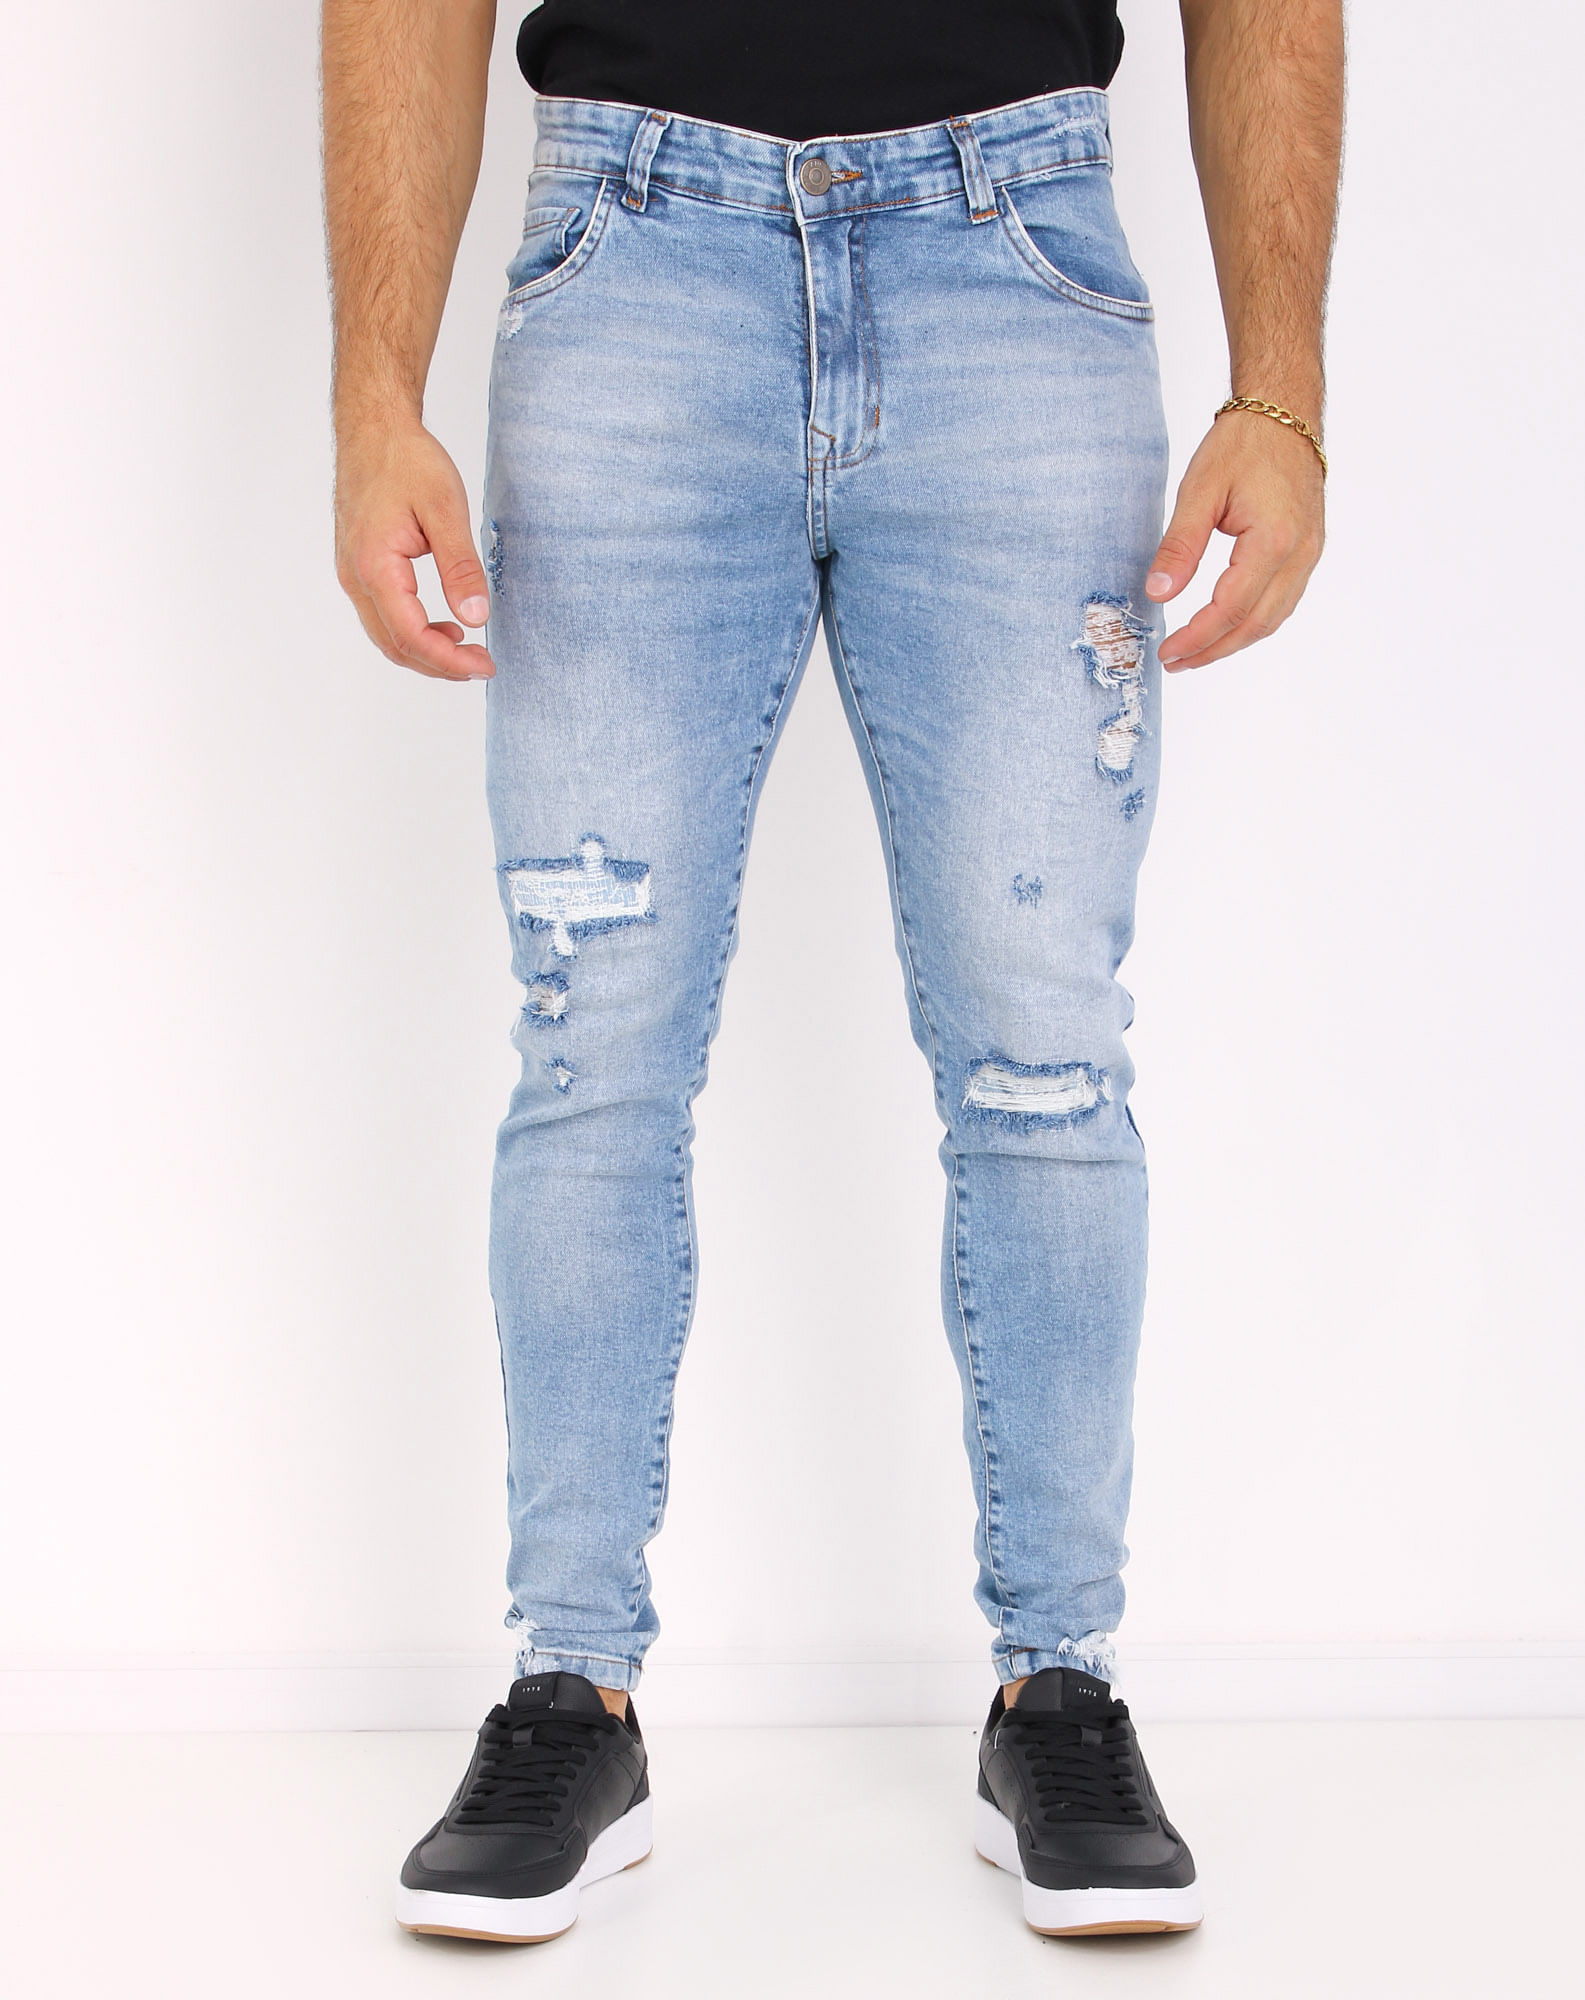 704818002 calça jeans skinny masculina puídos jeans 40 30b